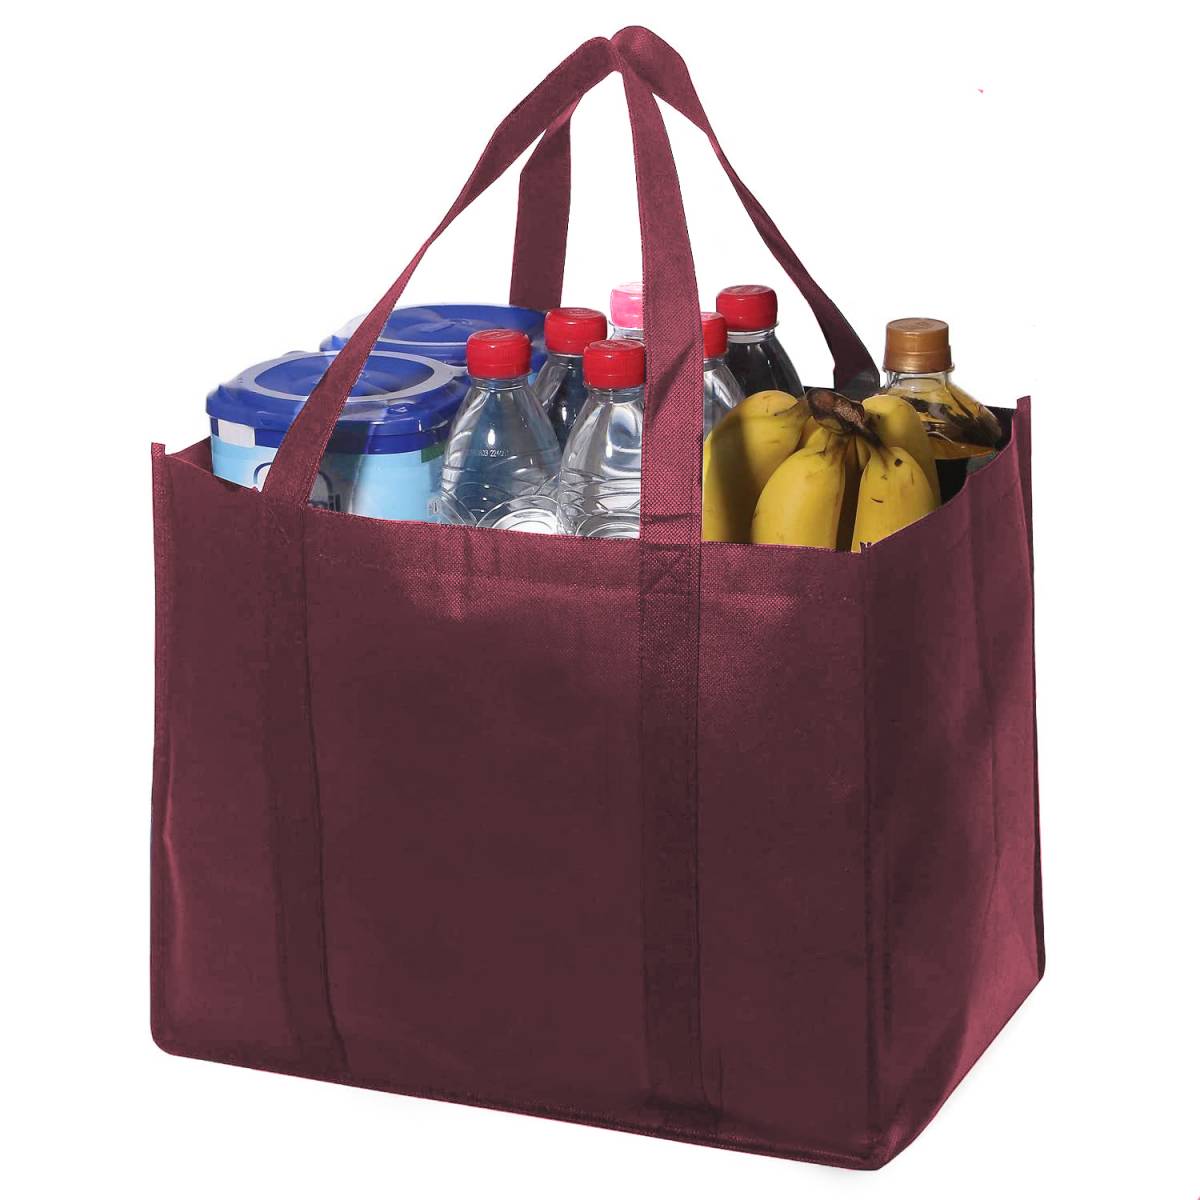 Эко сумка-шоппер для продуктов многоразовая хозяйственная, бордовая .